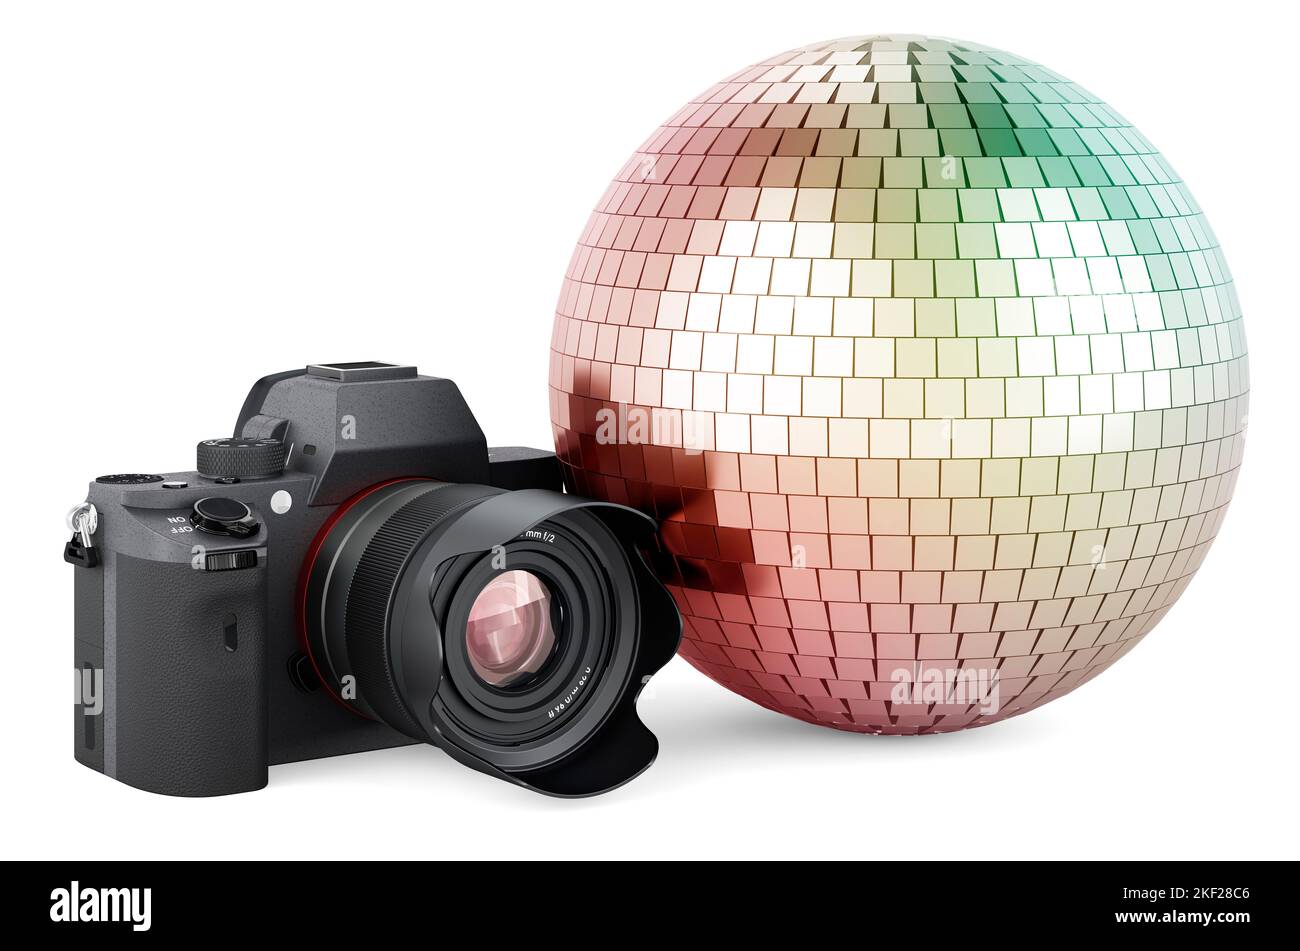 Fotocamera digitale con sfera disco a specchio, rendering 3D isolato su sfondo bianco Foto Stock